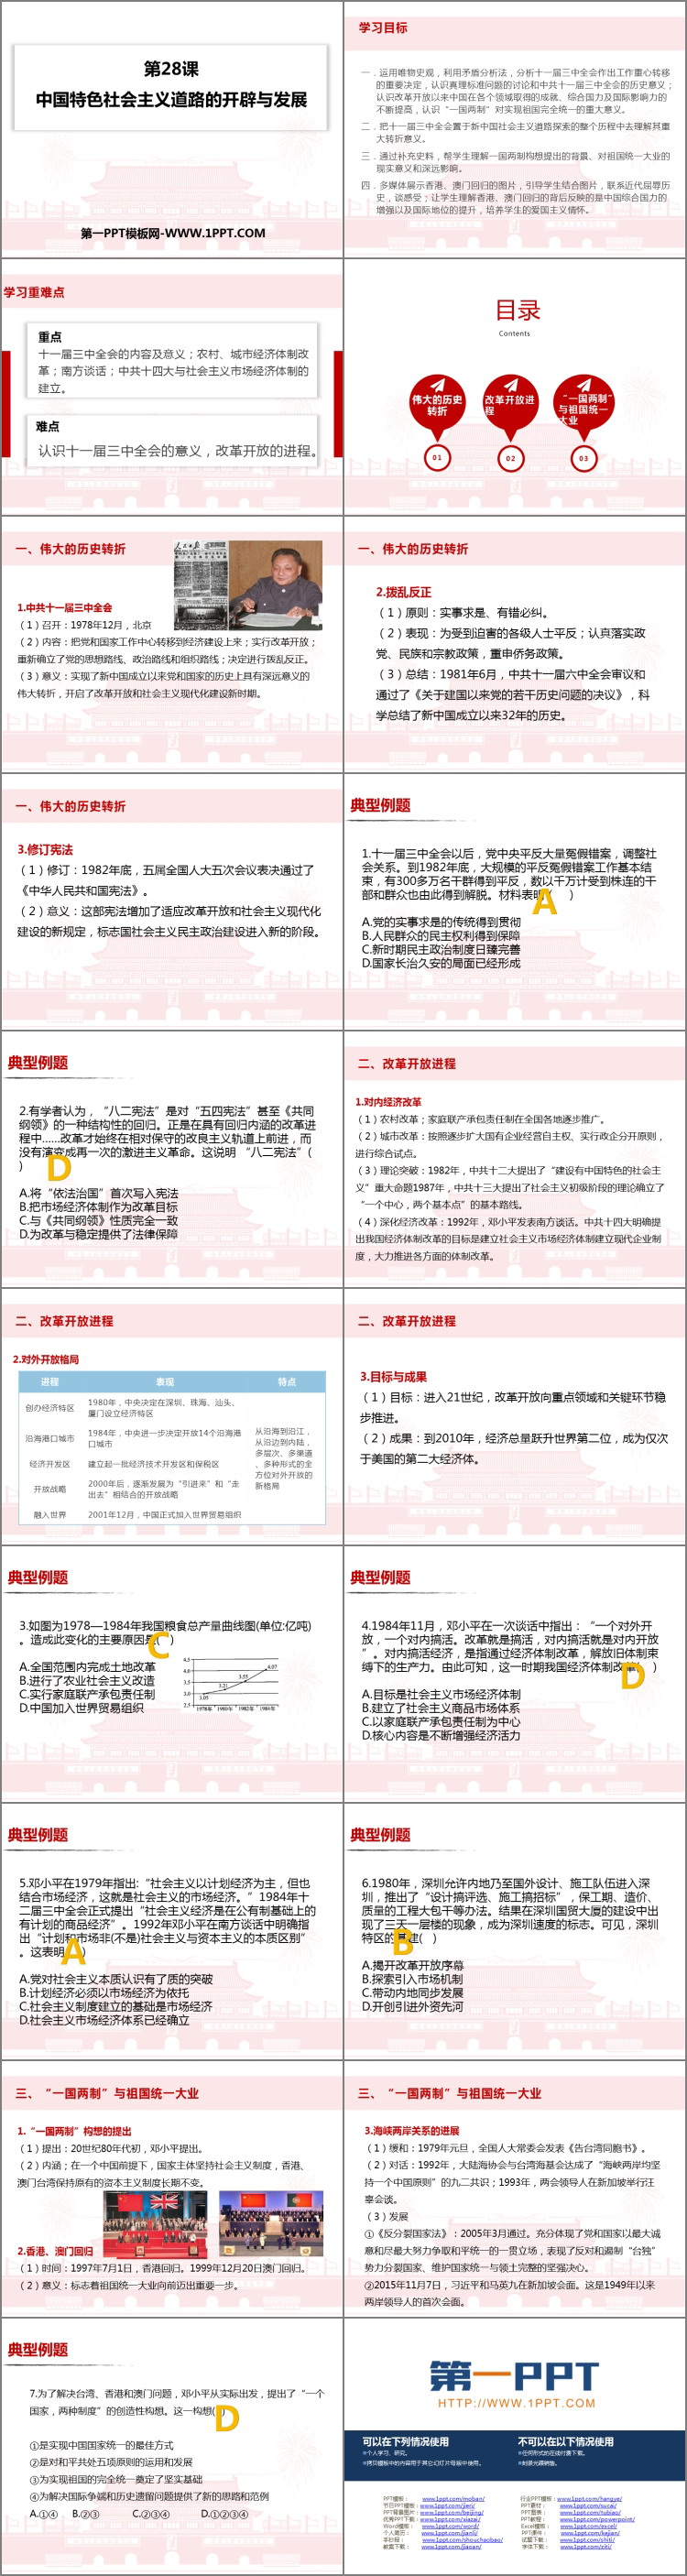 《中国特色社会主义道路的开辟与发展》PPT精品课件-预览图02